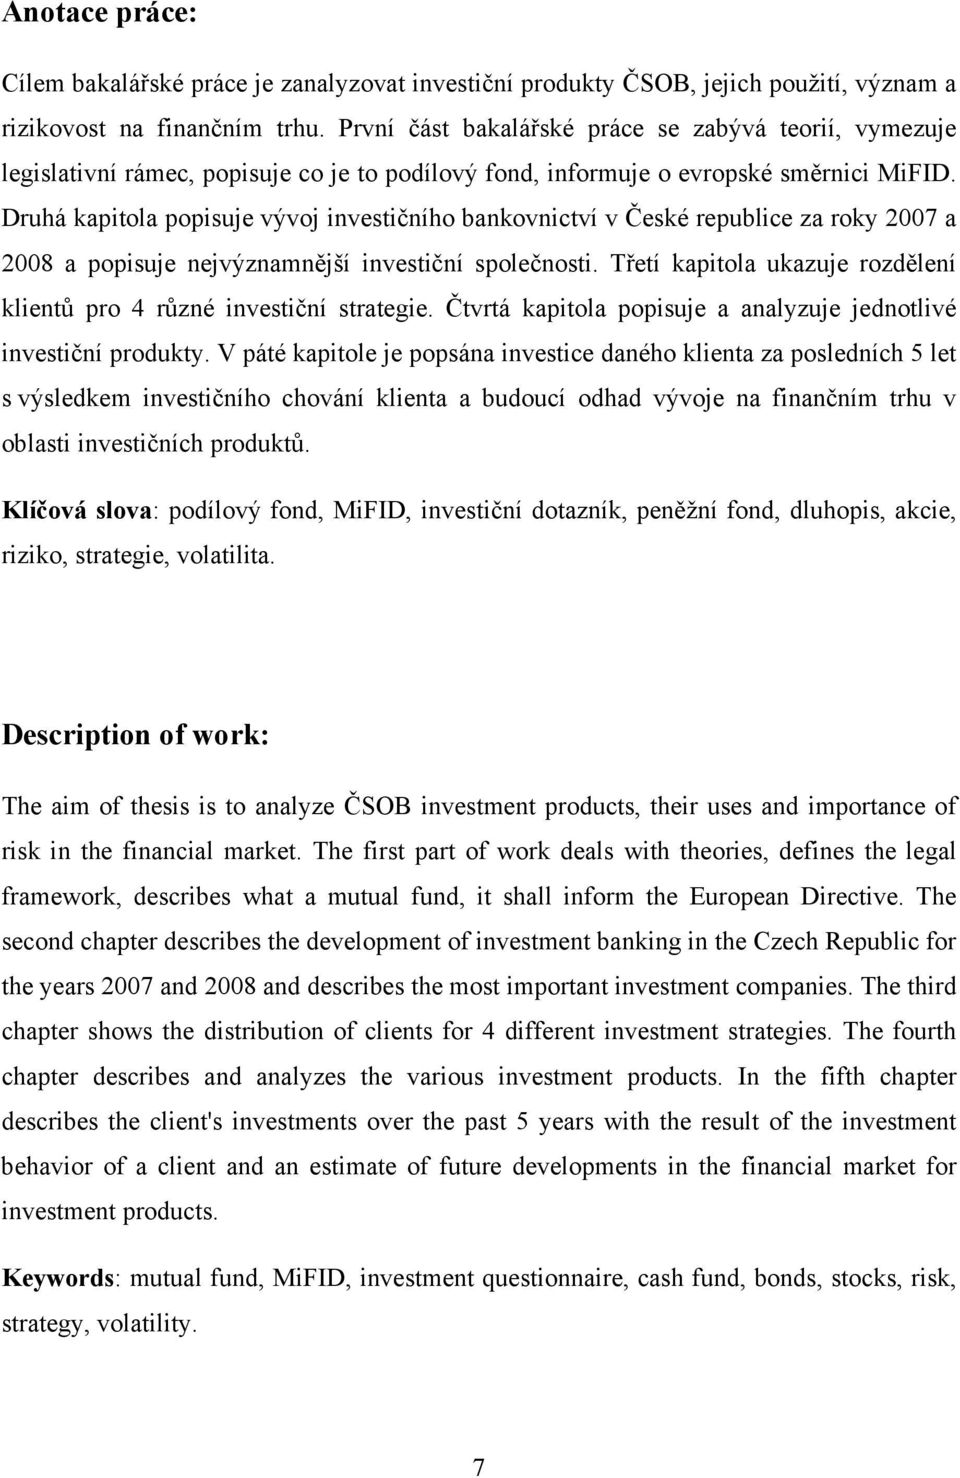 Druhá kapitola popisuje vývoj investičního bankovnictví v České republice za roky 2007 a 2008 a popisuje nejvýznamnější investiční společnosti.